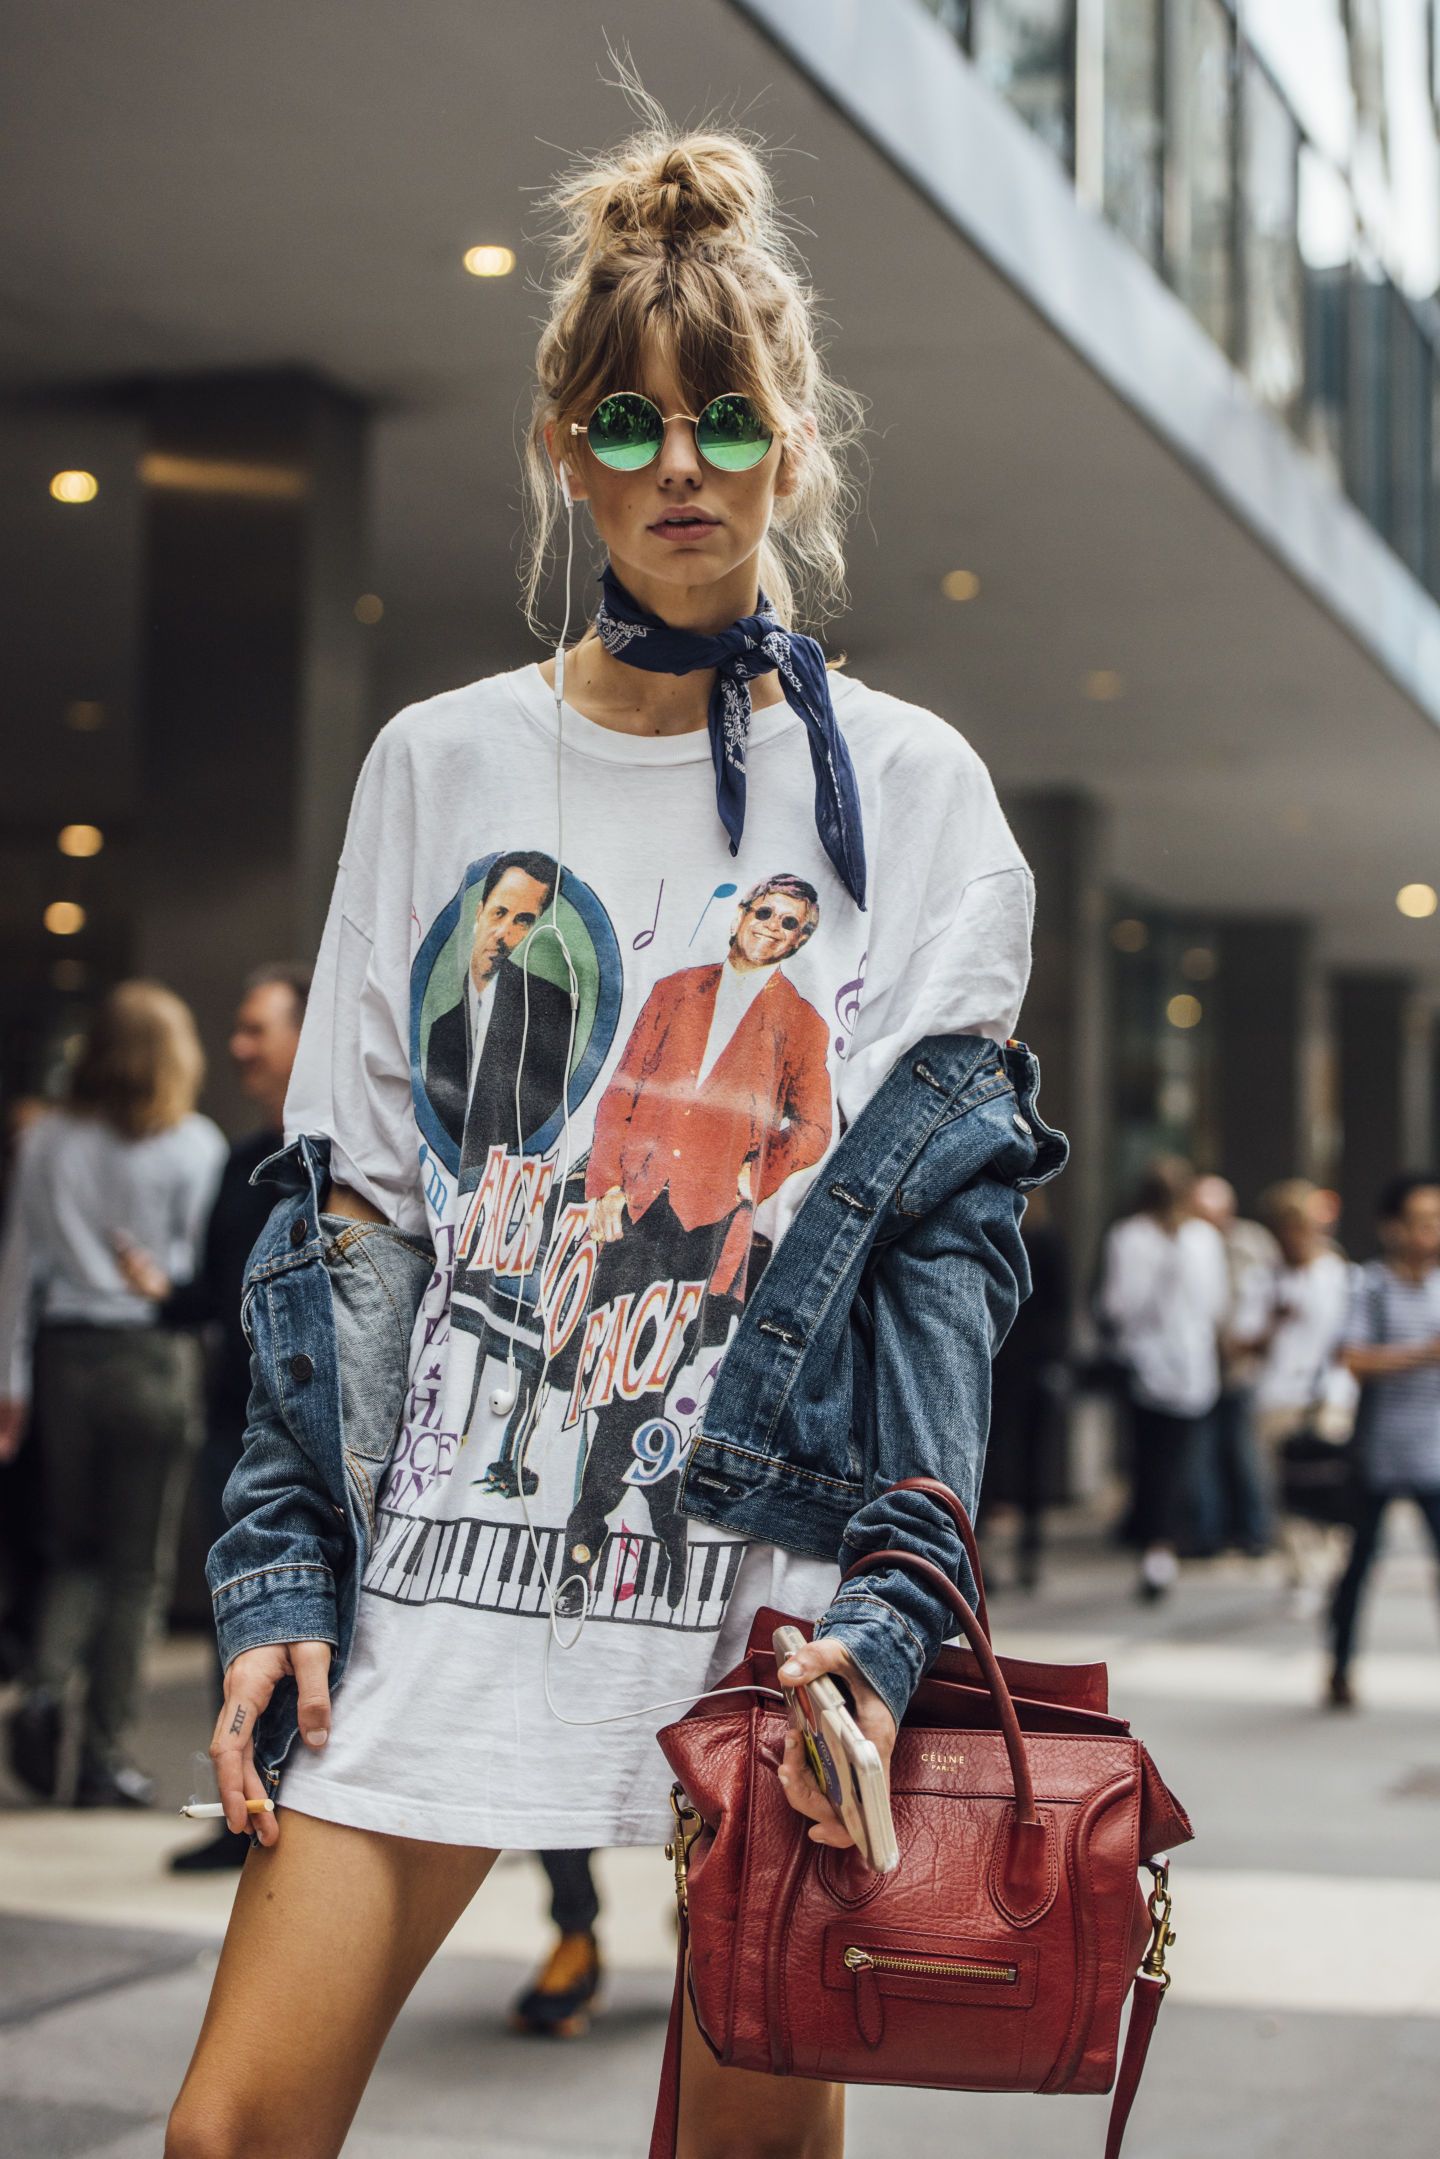 Базовый гардероб 2019: как правильно сформировать стильный образ